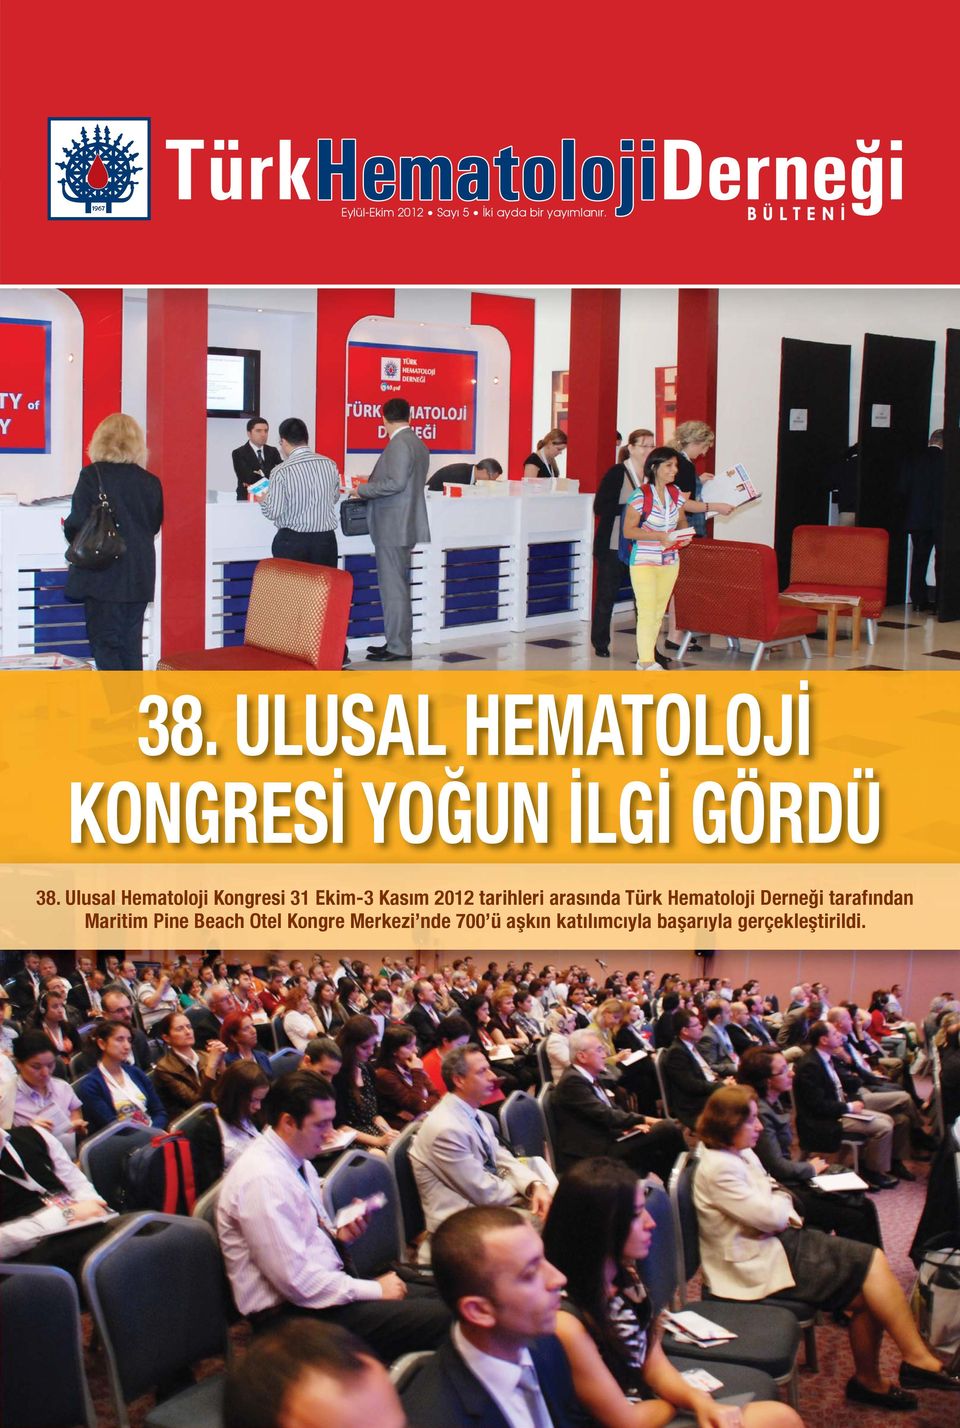 Ulusal Hematoloji Kongresi 31 Ekim-3 Kasım 2012 tarihleri arasında Türk